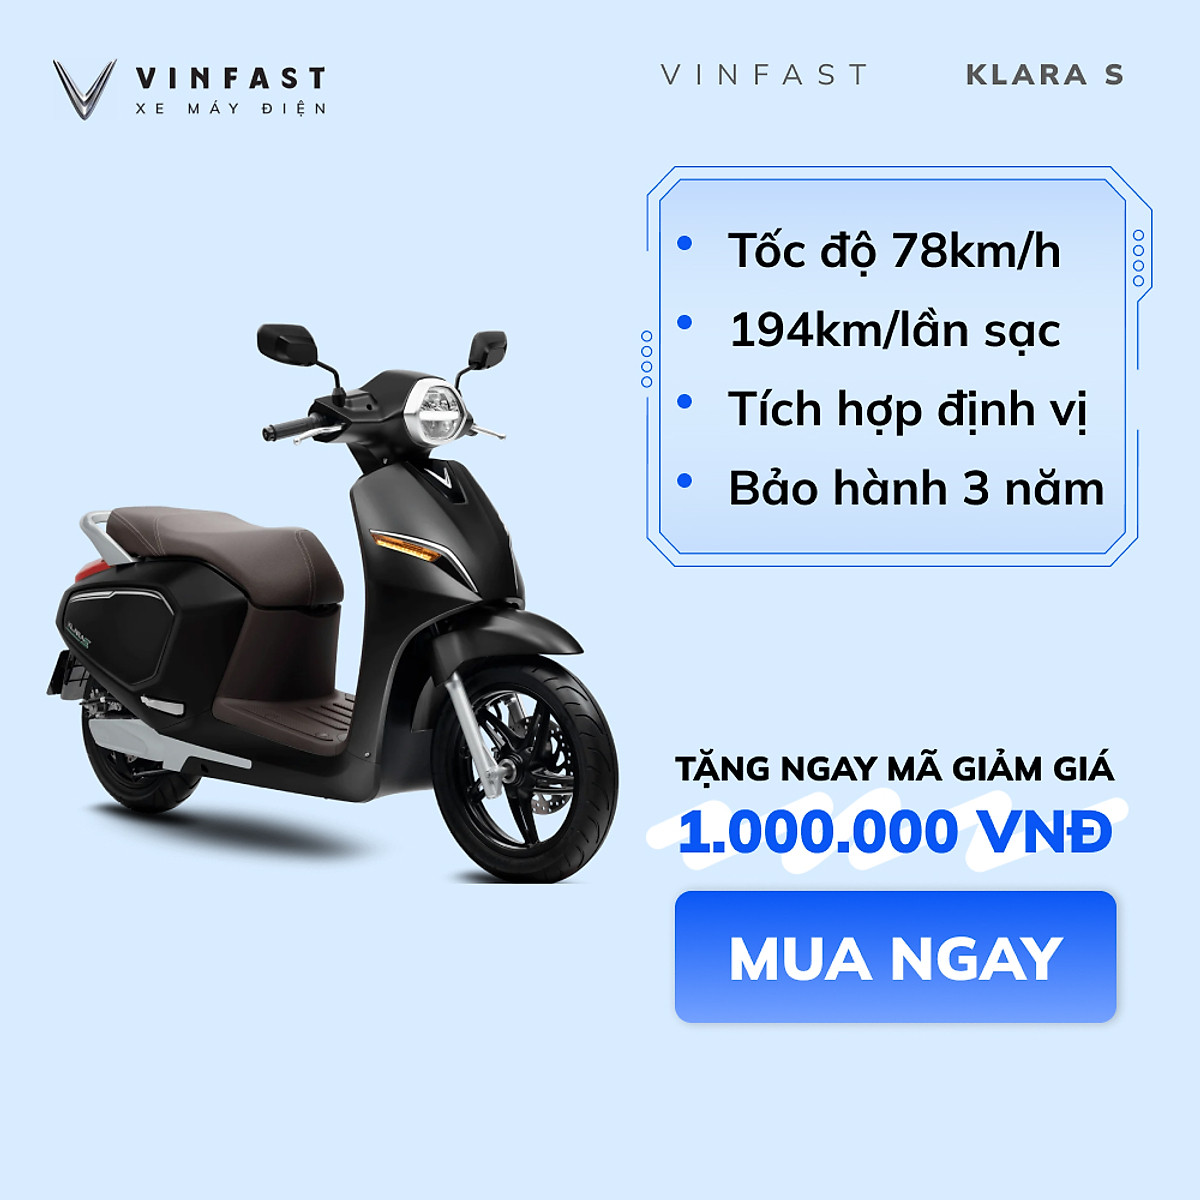 VinFast Evo 200 lộ diện tại Việt Nam giá 22 triệu đồng